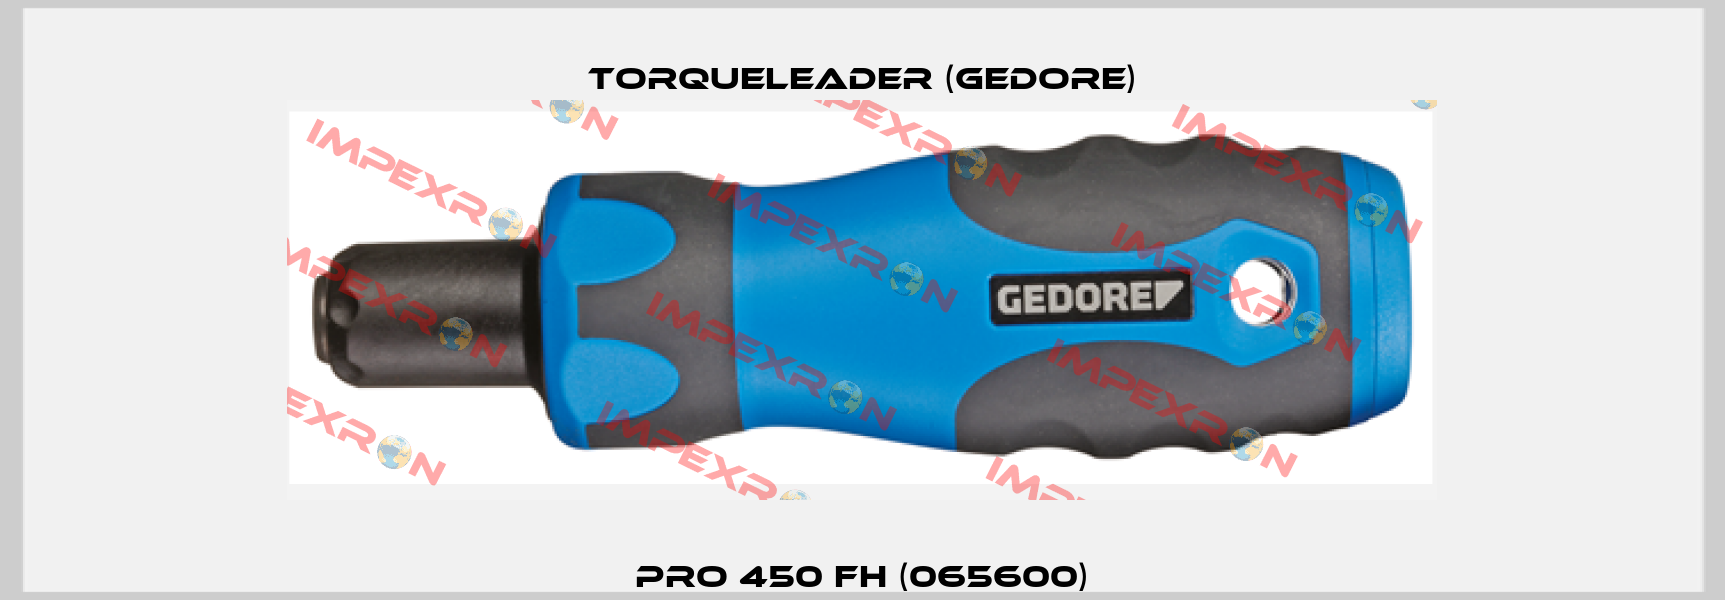 PRO 450 FH (065600) Torqueleader (Gedore)